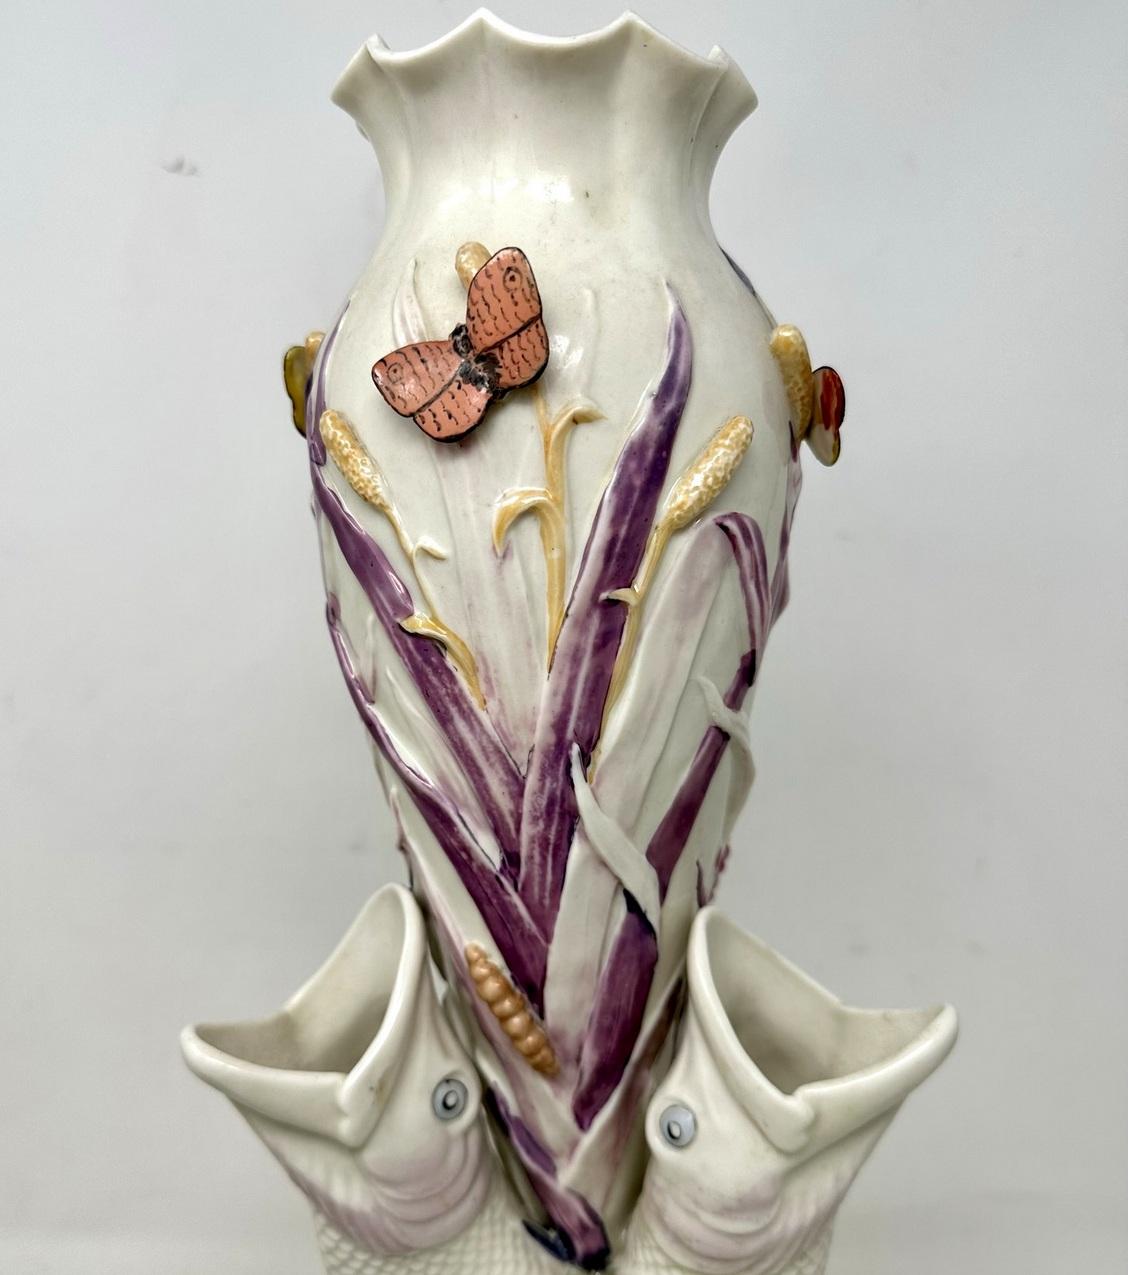 Antique Pair Irish Belleek Porcelain Triple Fish Rare Vases 1863-1890 Ireland  For Sale 1